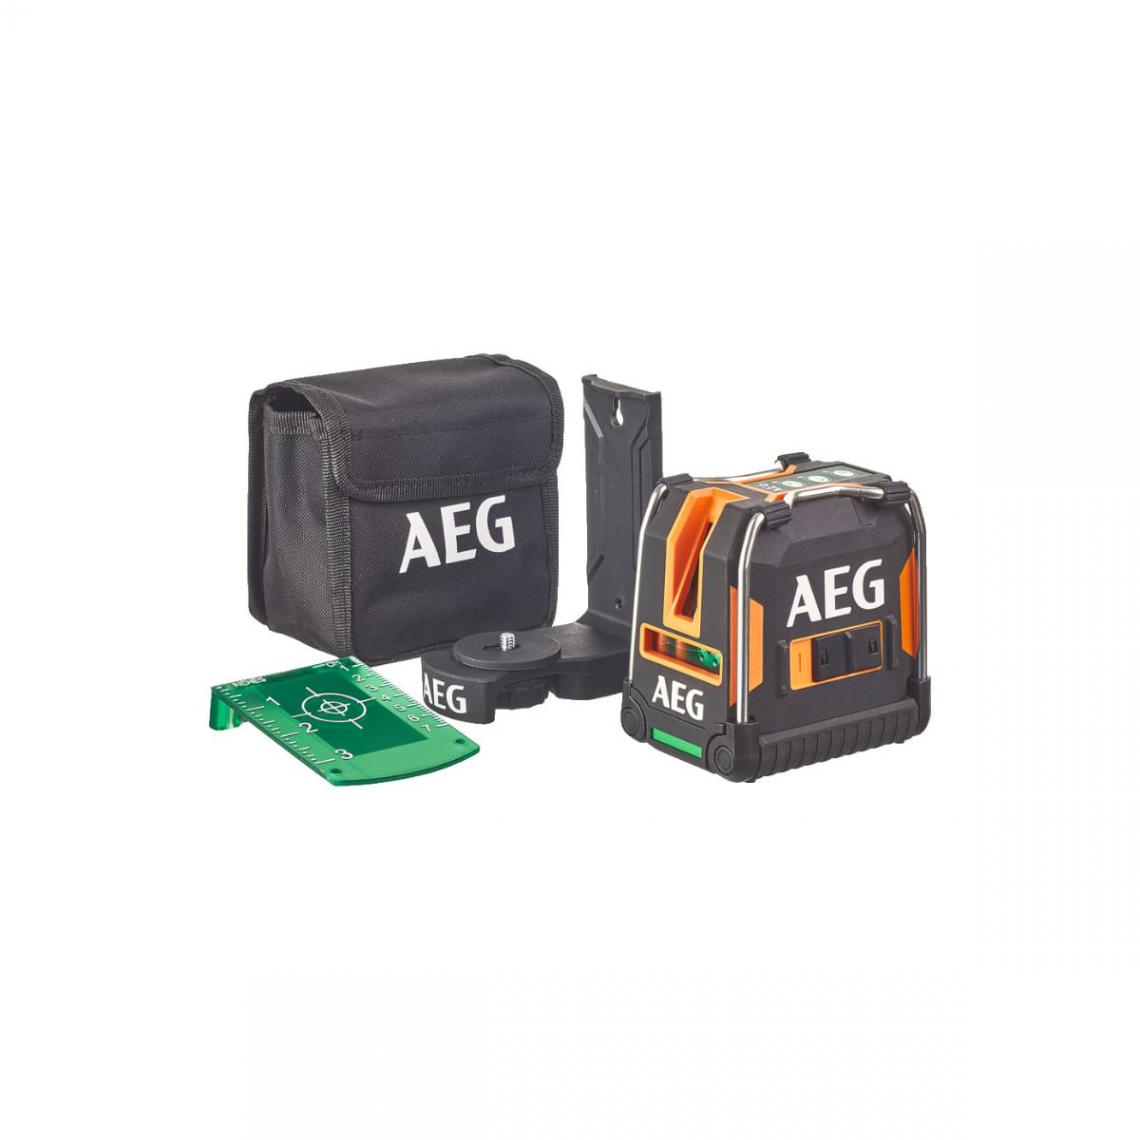 AEG - Appareil de mesure laser AEG électronique - 30m - CLG330-K - Niveaux lasers